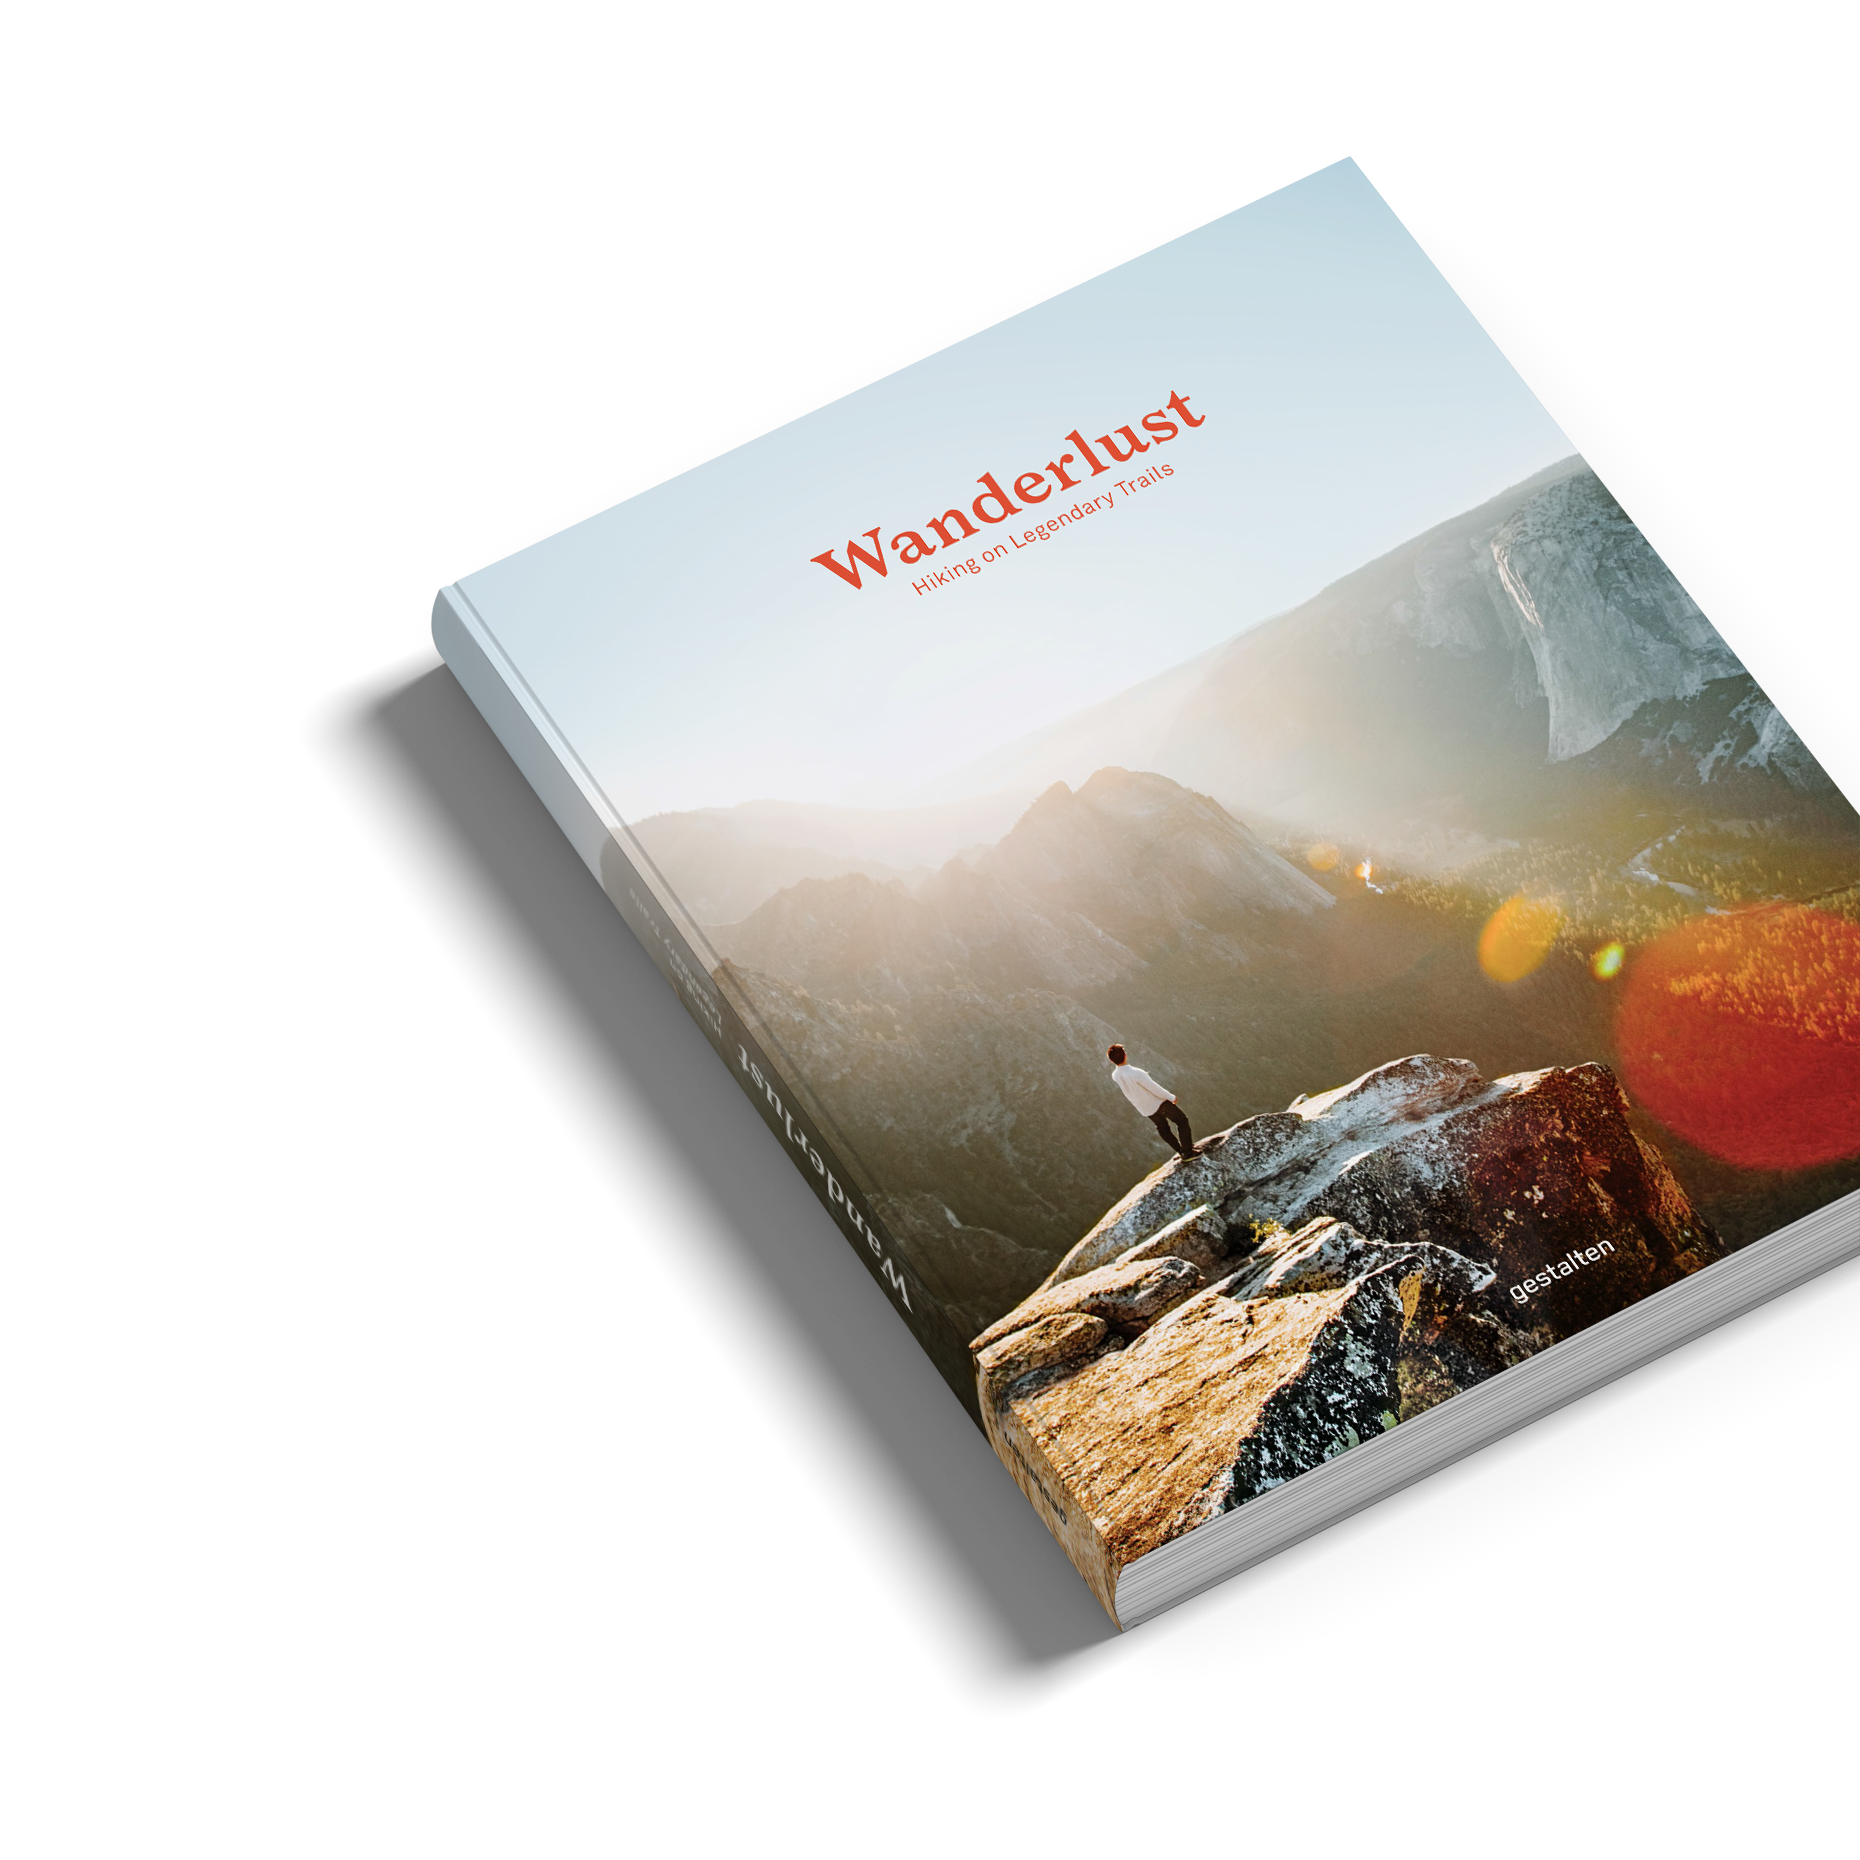 30 wanderlust-inspiring books for travellers